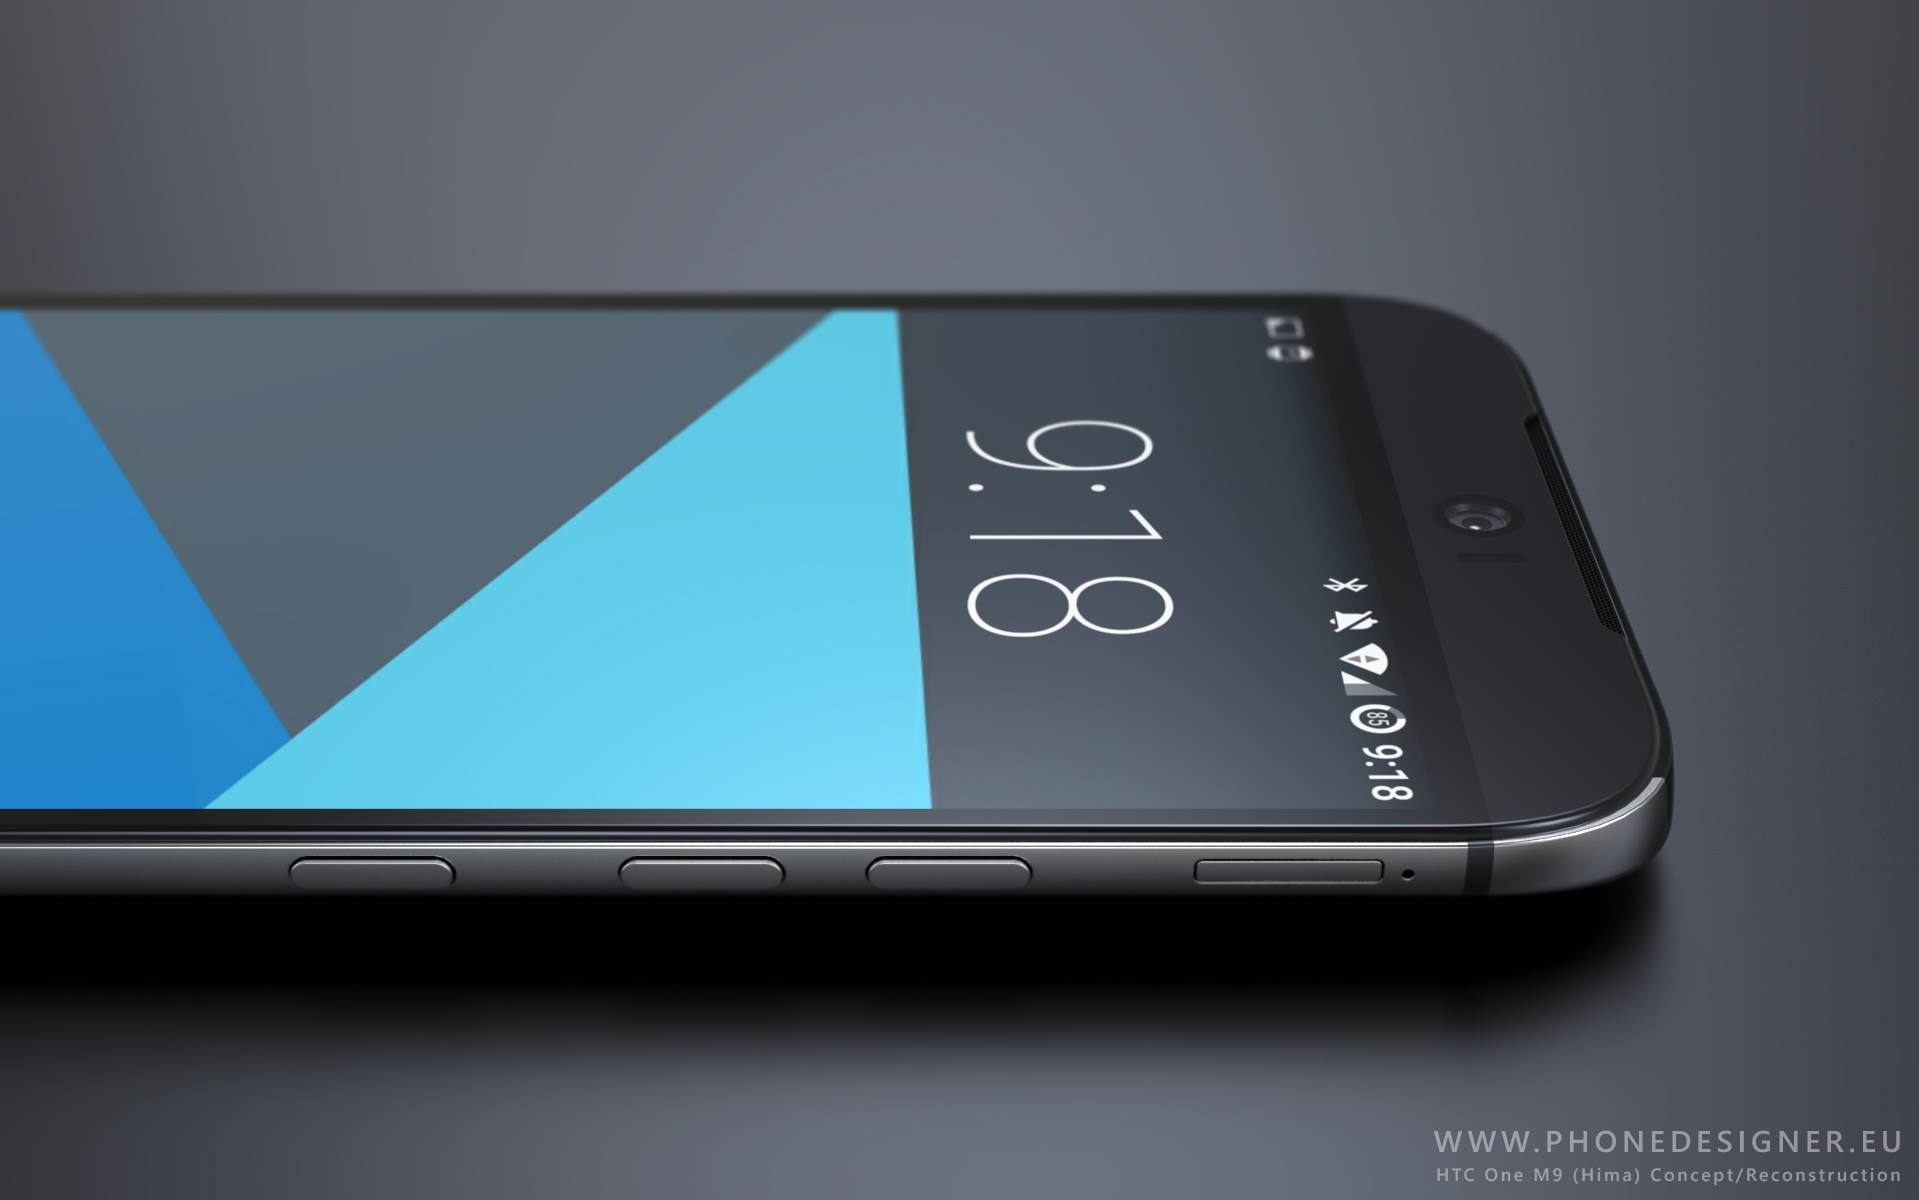 HTC One M9, nuovi render mostrano il design definitivo